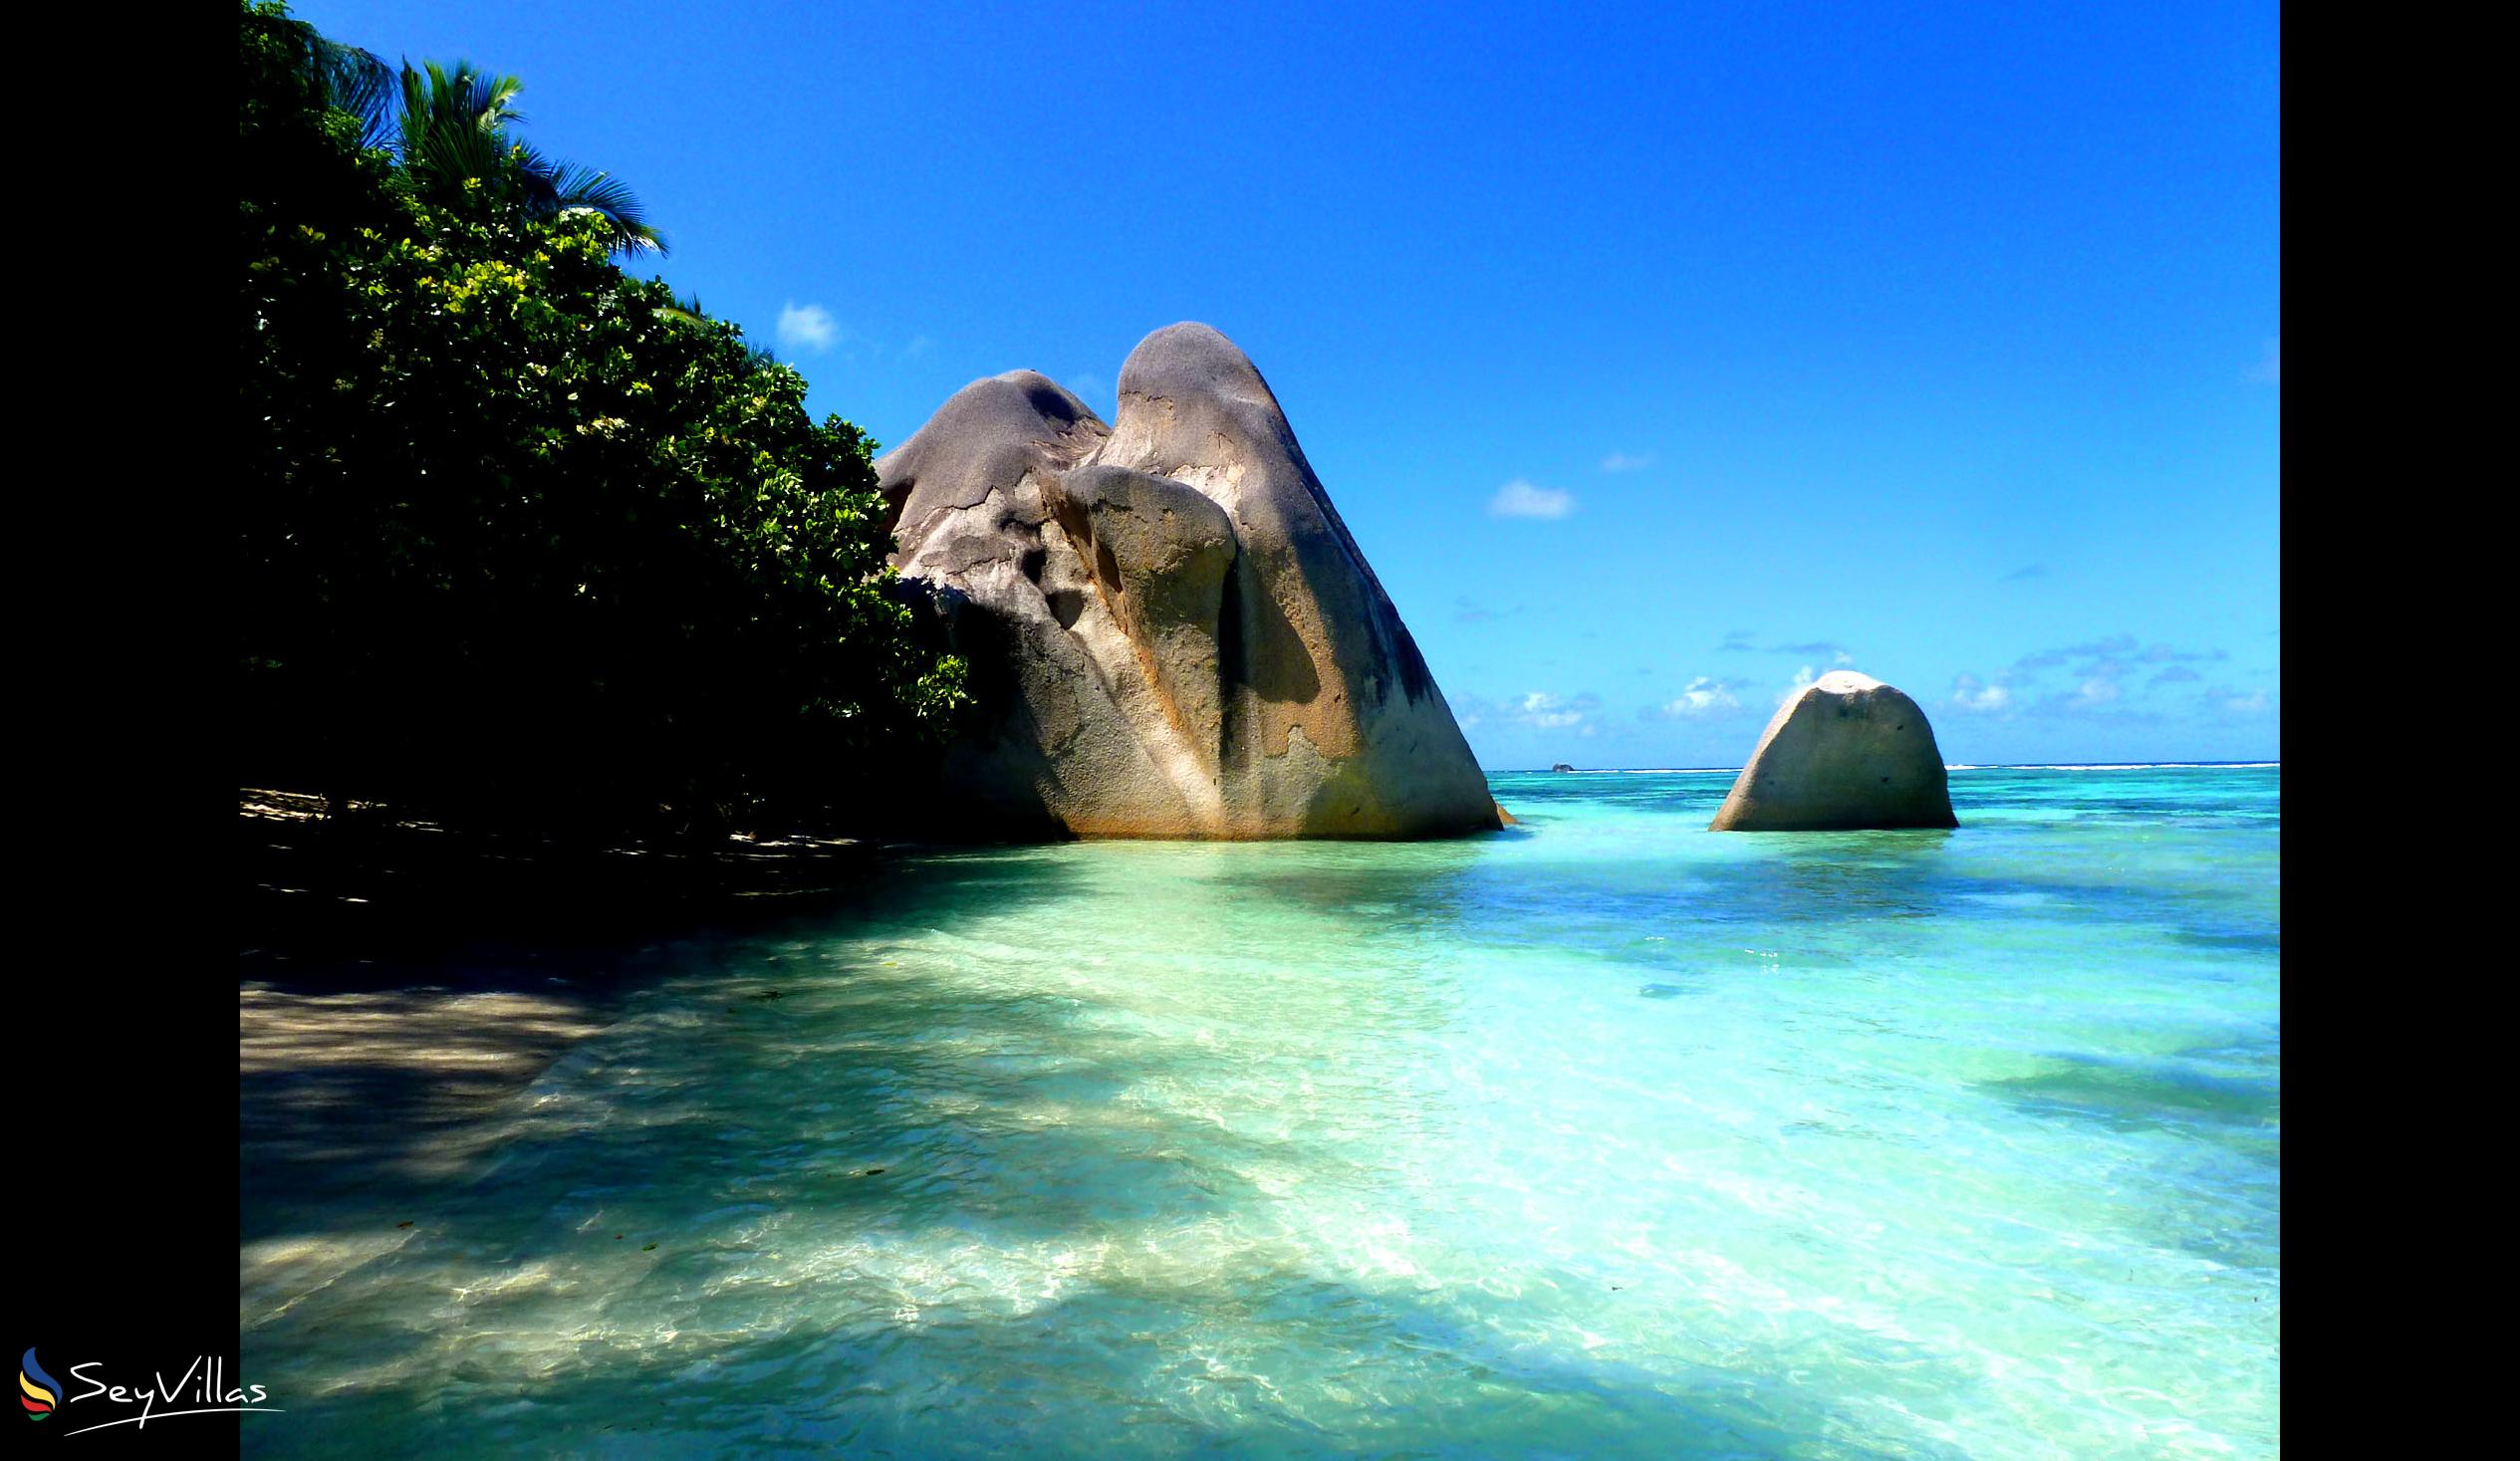 Foto 29: Le Relax Beach House - Spiagge - La Digue (Seychelles)